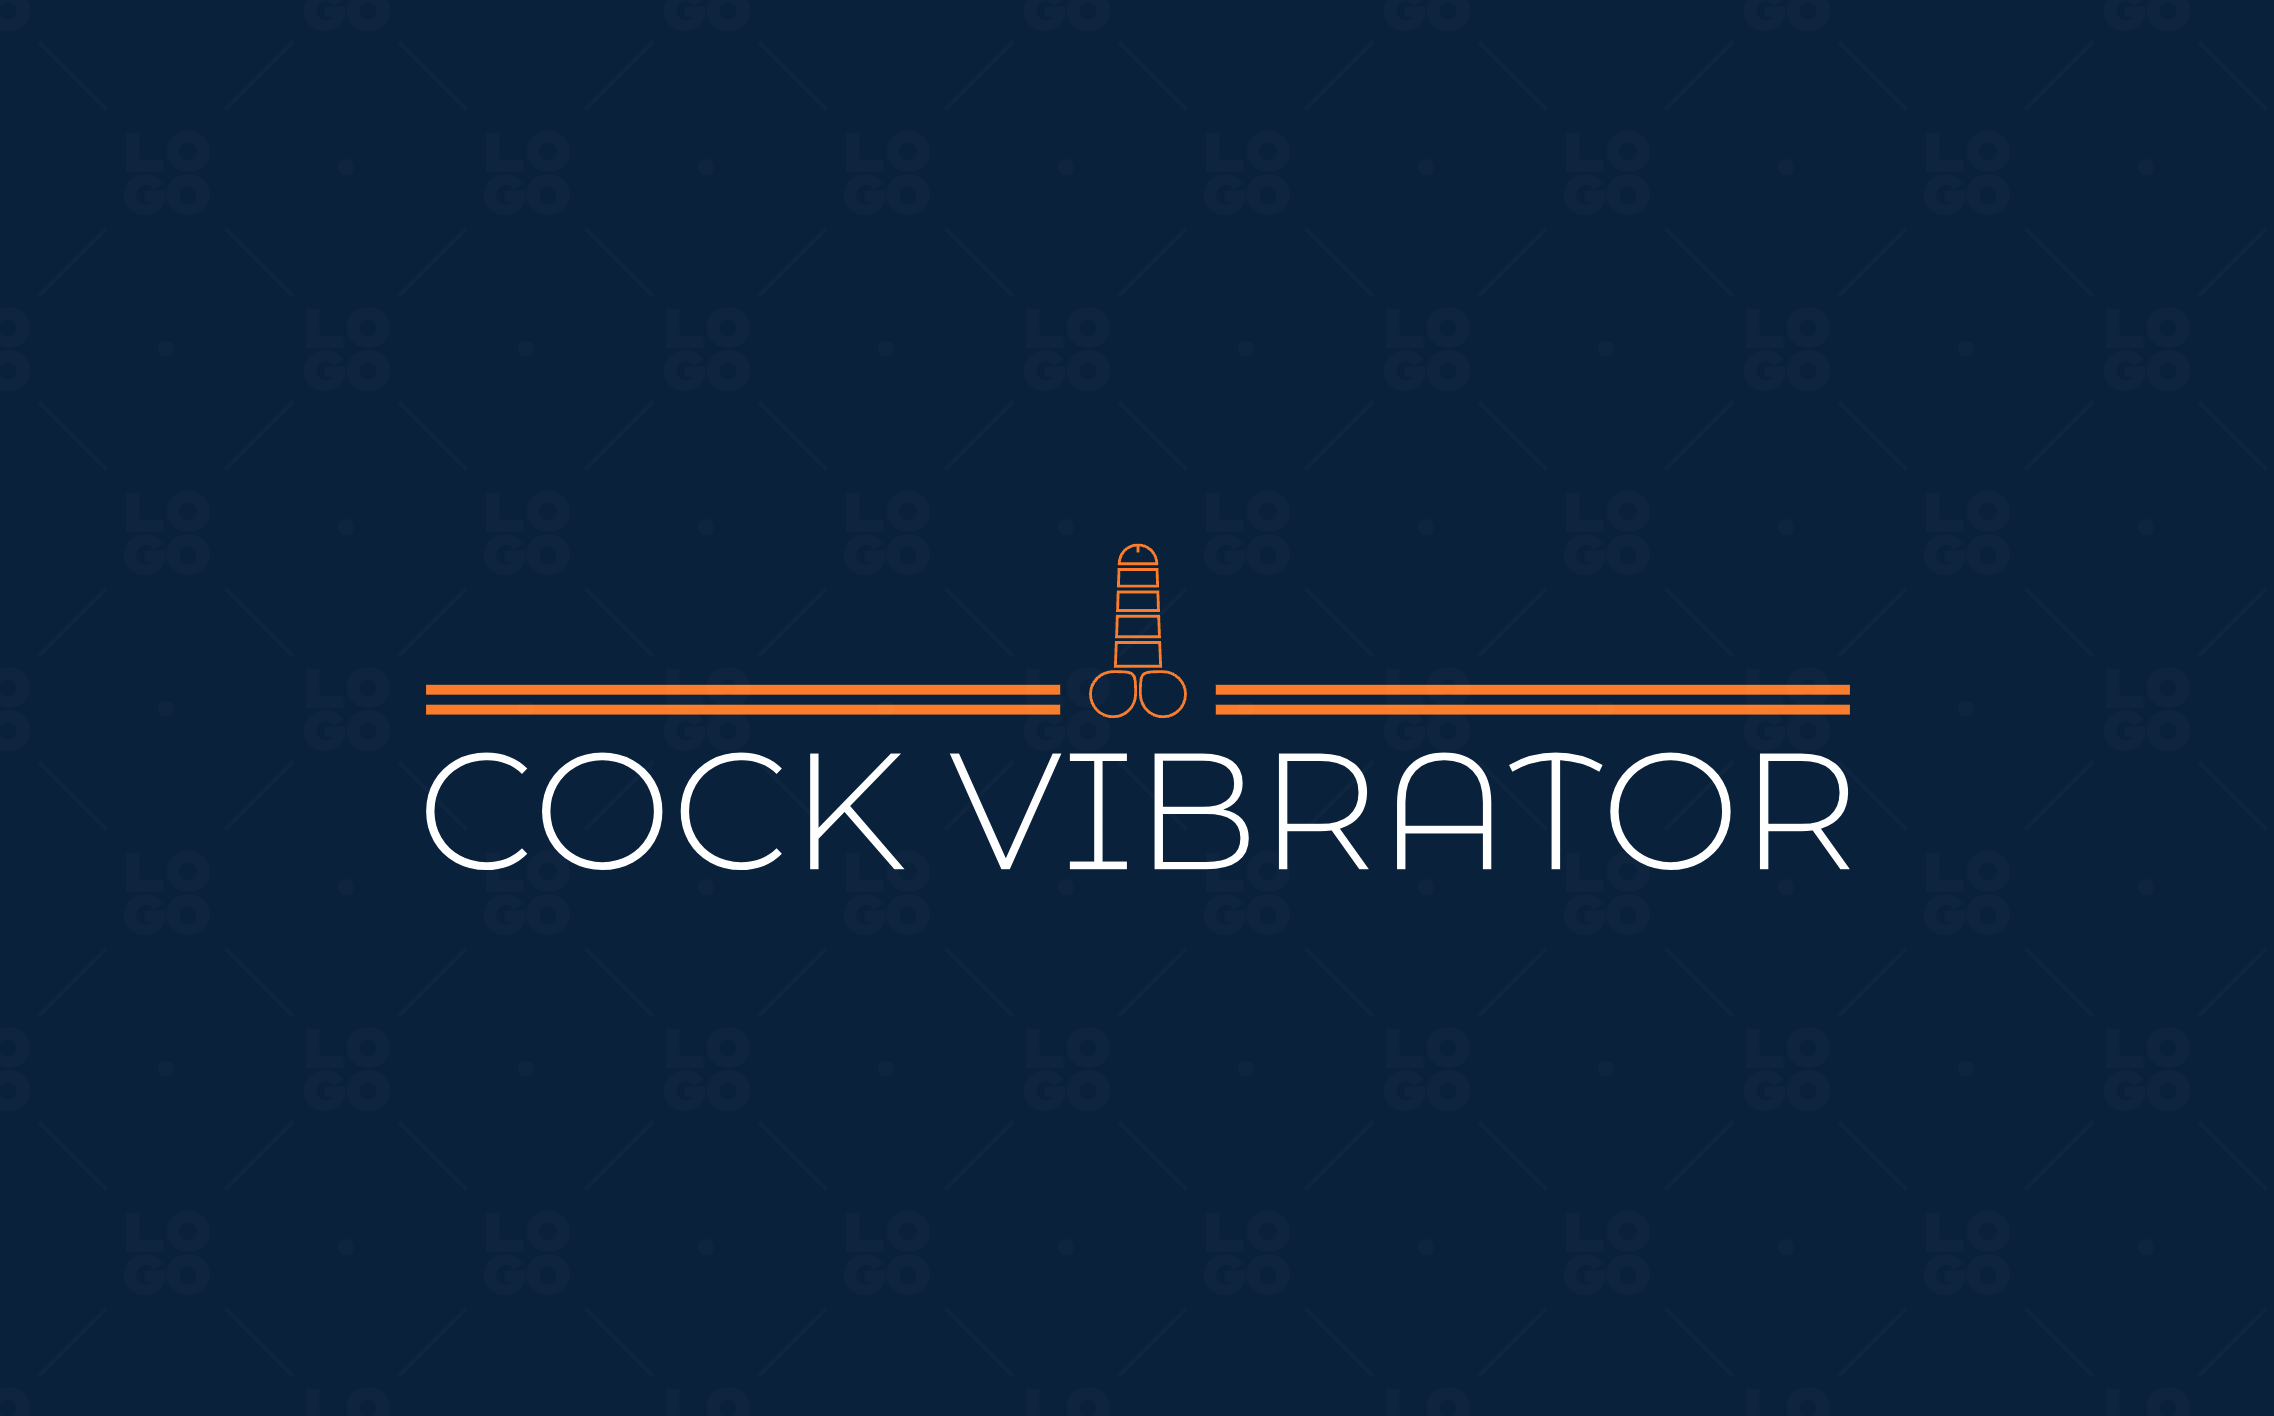 CockVibrator.com